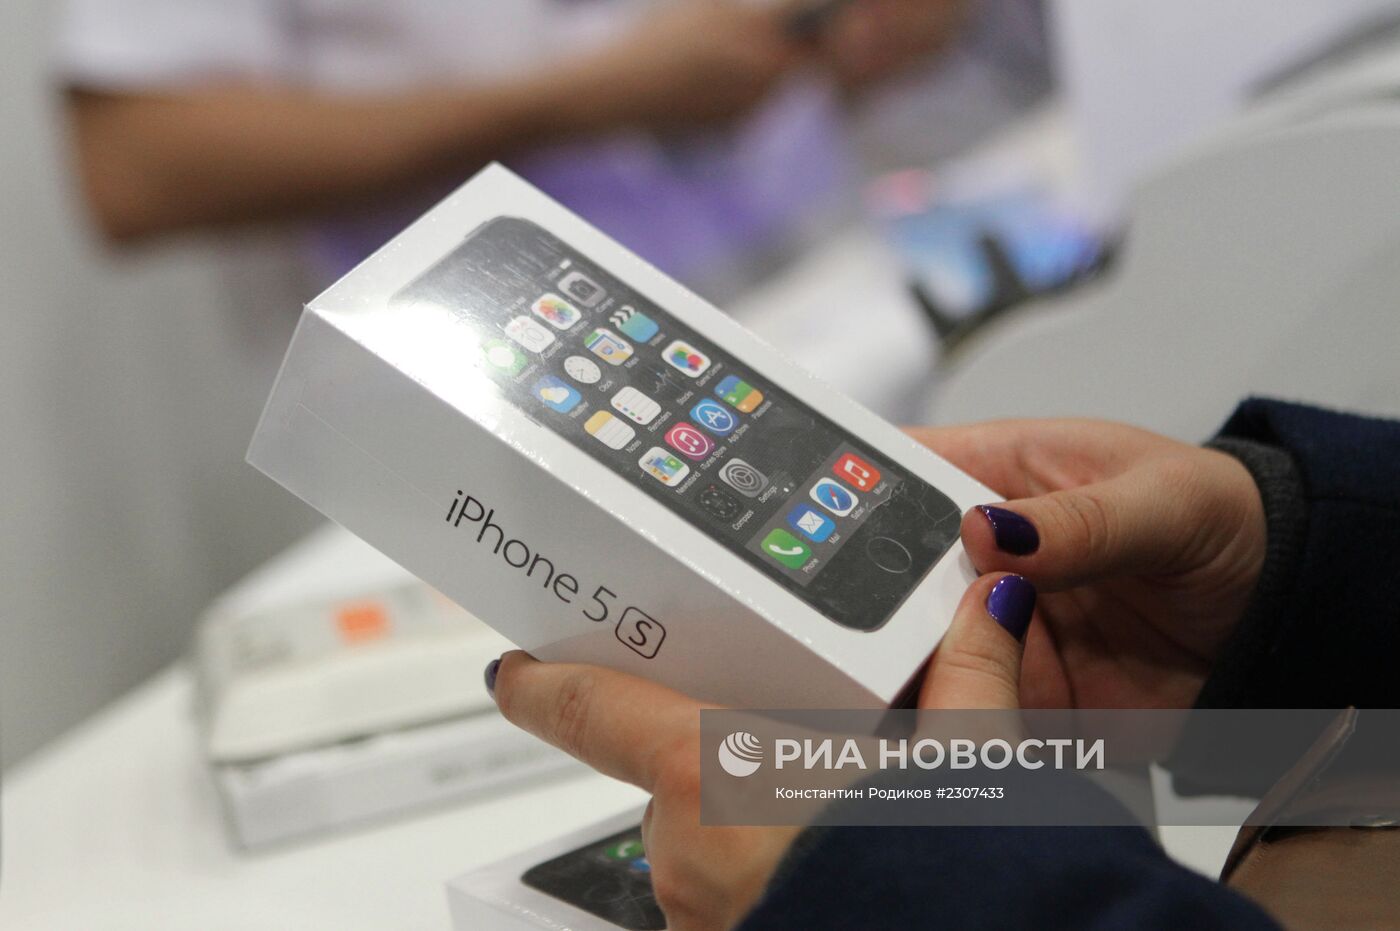 Официальный старт продажи iPhone 5s и iPhone 5c в Москве